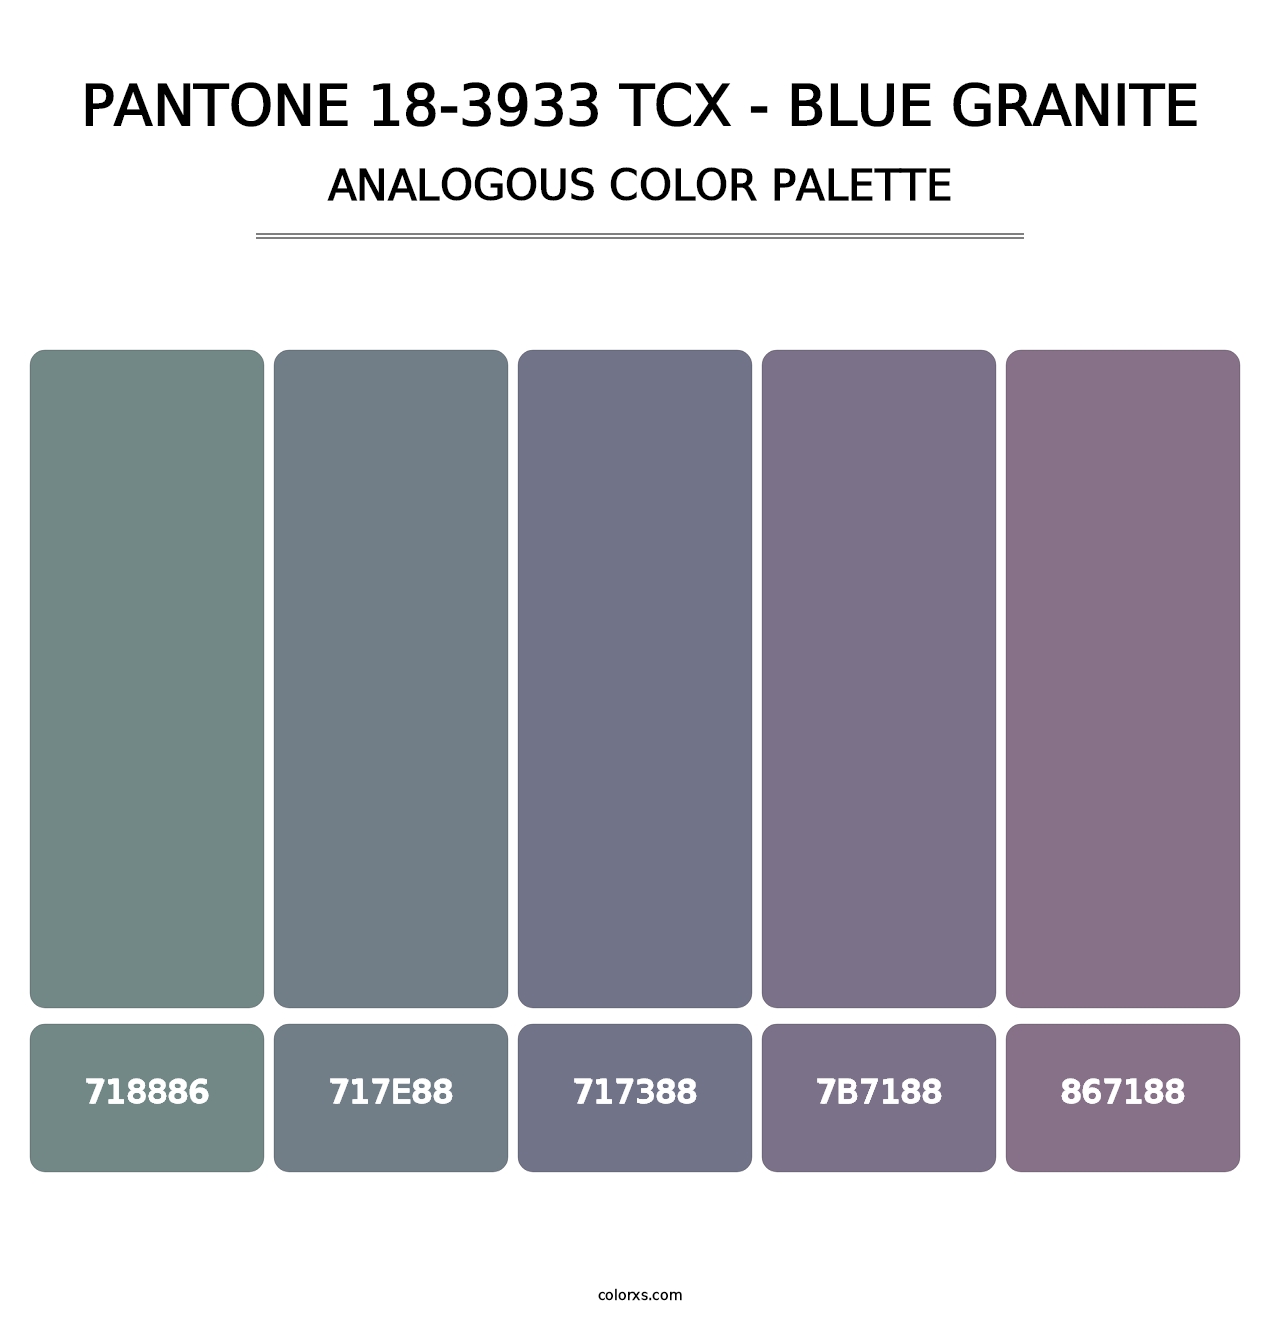 PANTONE 18-3933 TCX - Blue Granite - Analogous Color Palette